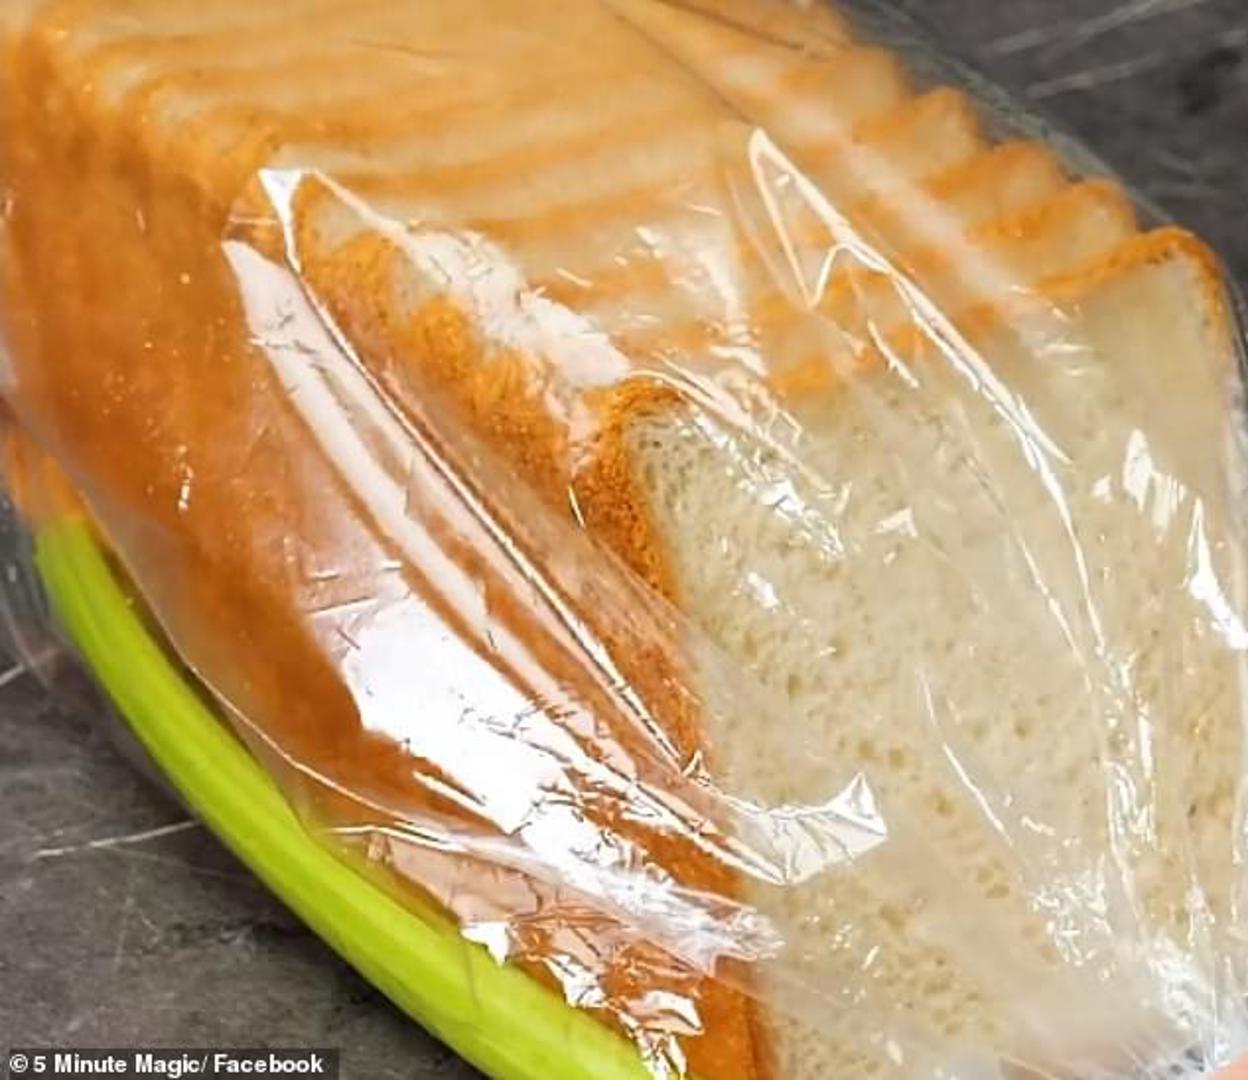 Ako dodate celer u vrećicu s kruhom, kruh će dulje trajati. Upit će vlažost od celera, koji se sastoji od 95 posto vode. 